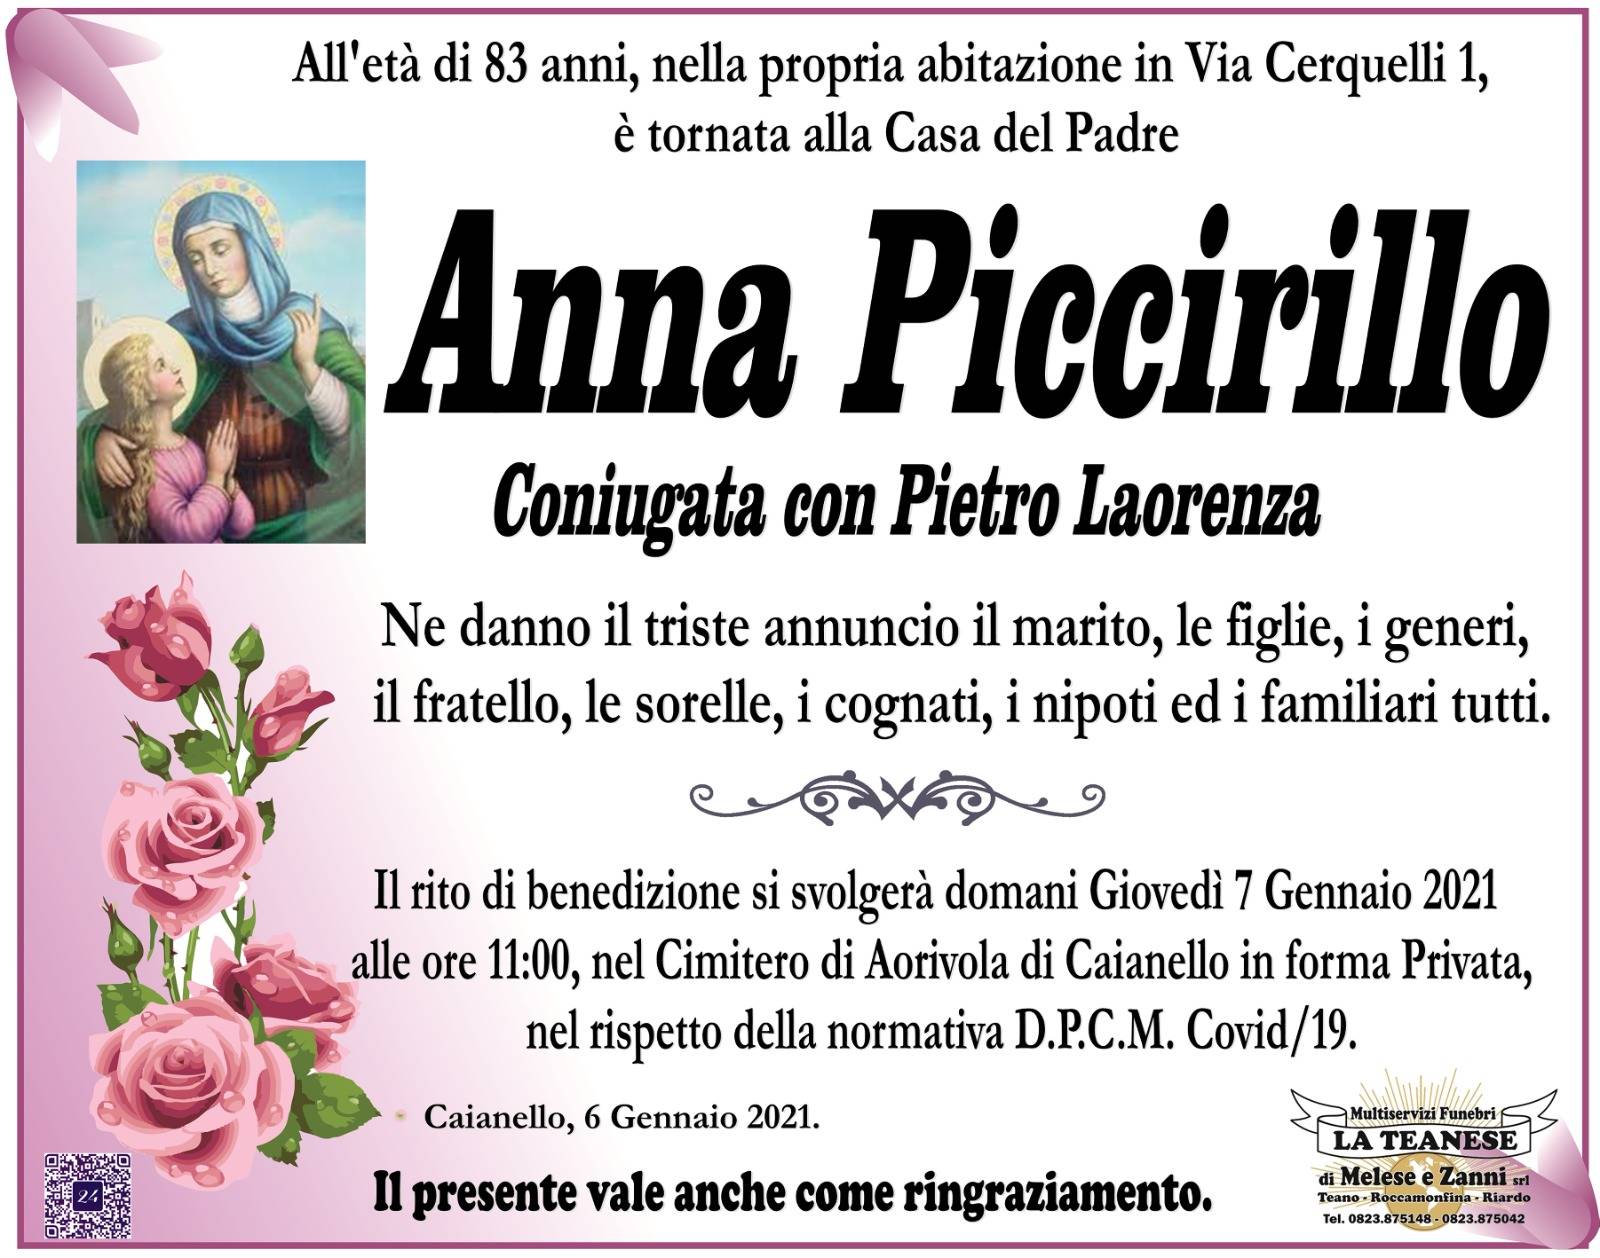 Anna Piccirillo